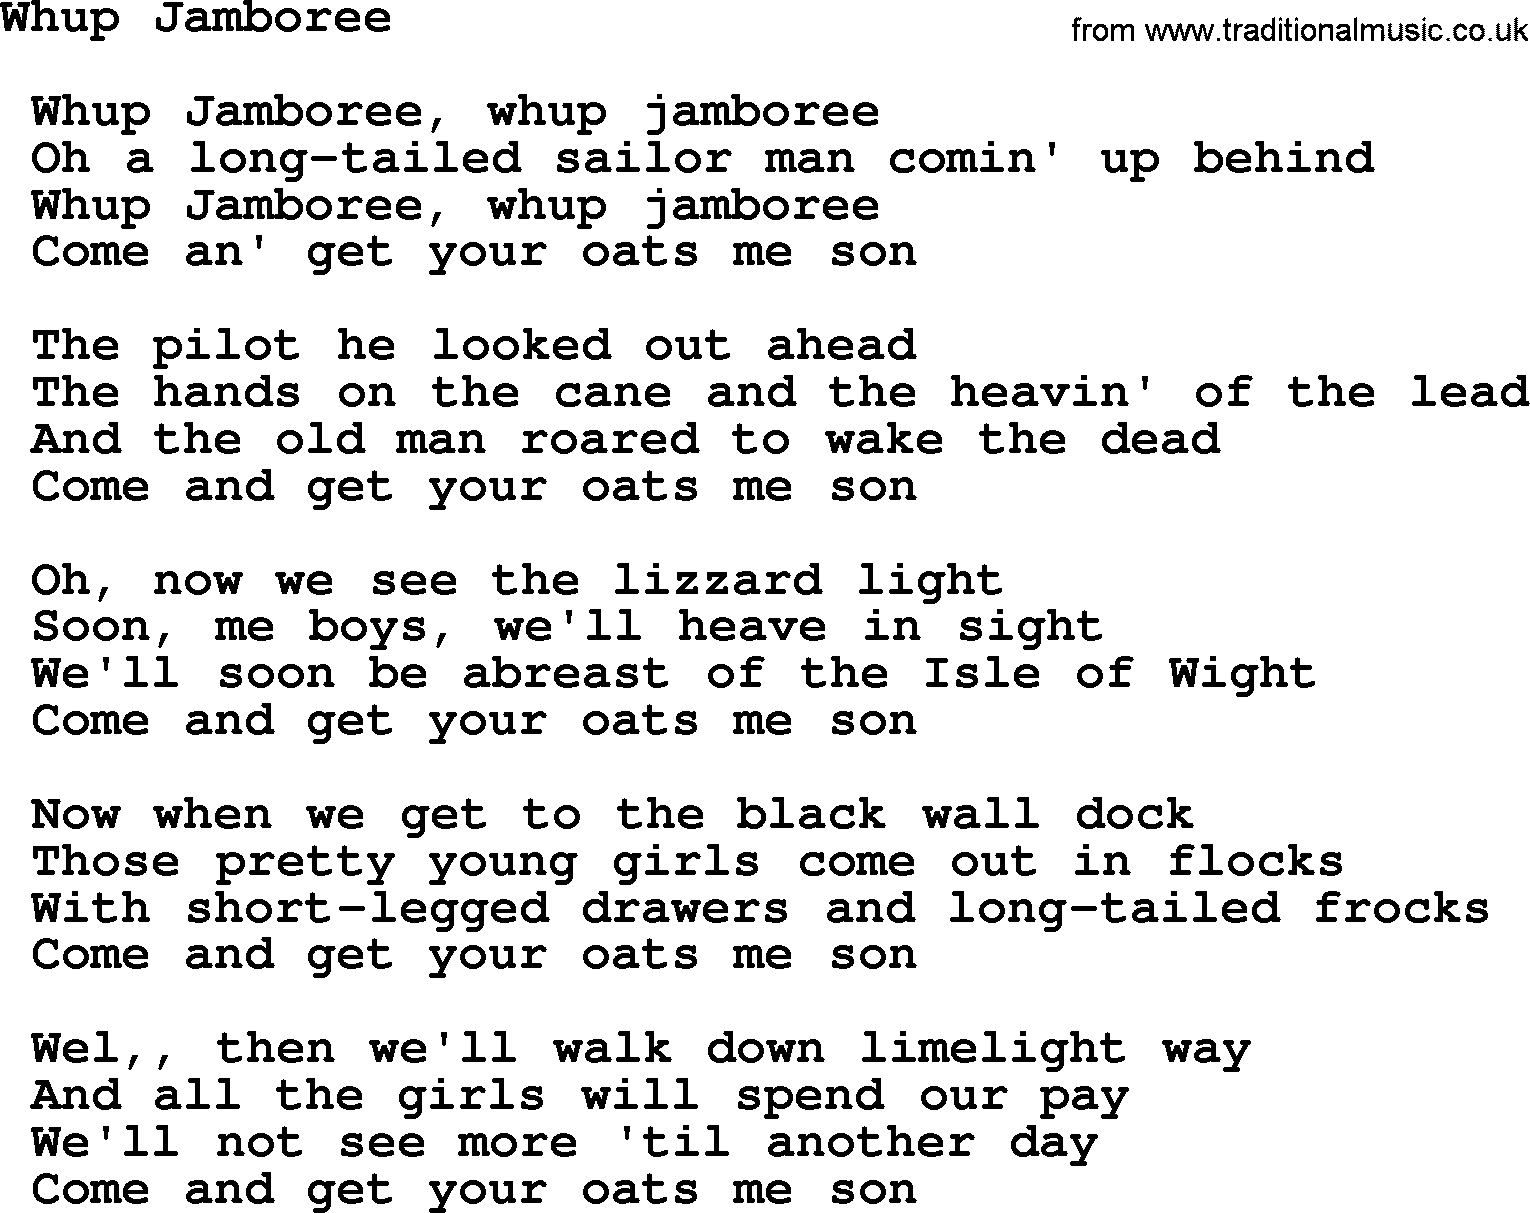 Sea Song or Shantie: Whup Jamboree, lyrics